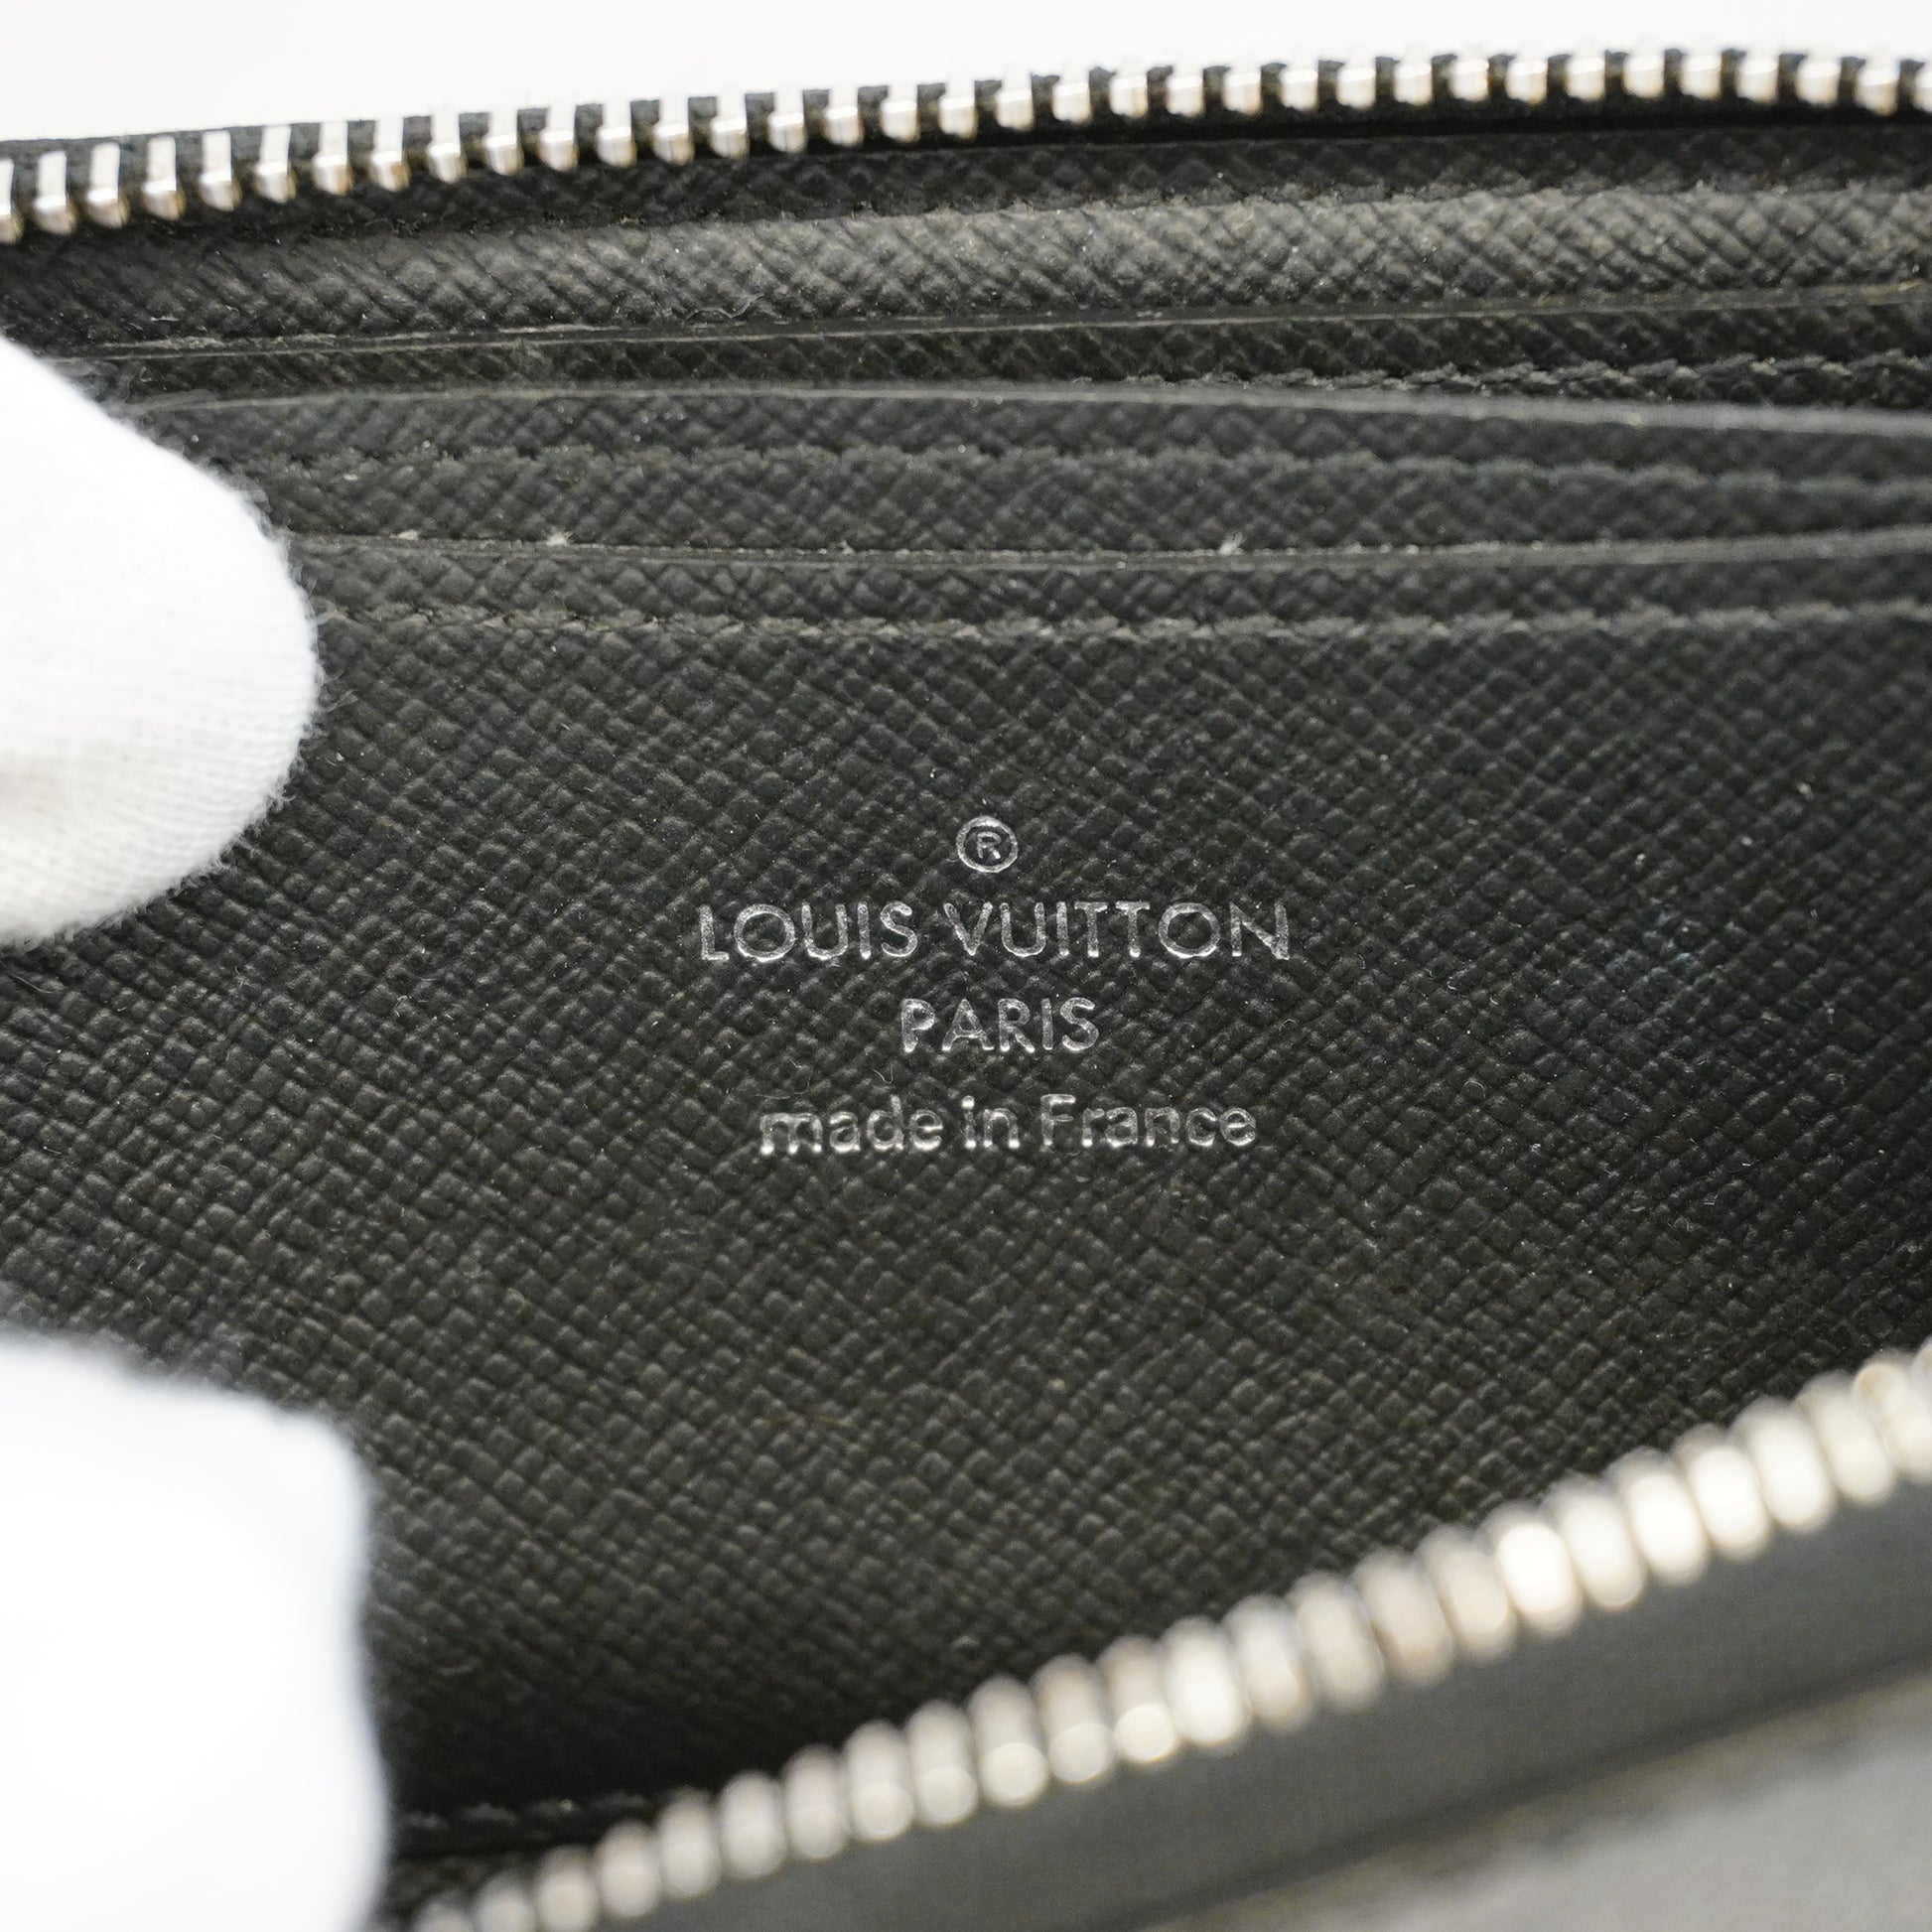 LOUIS VUITTON Coin card holder M64038 coin purse Gras fit mens